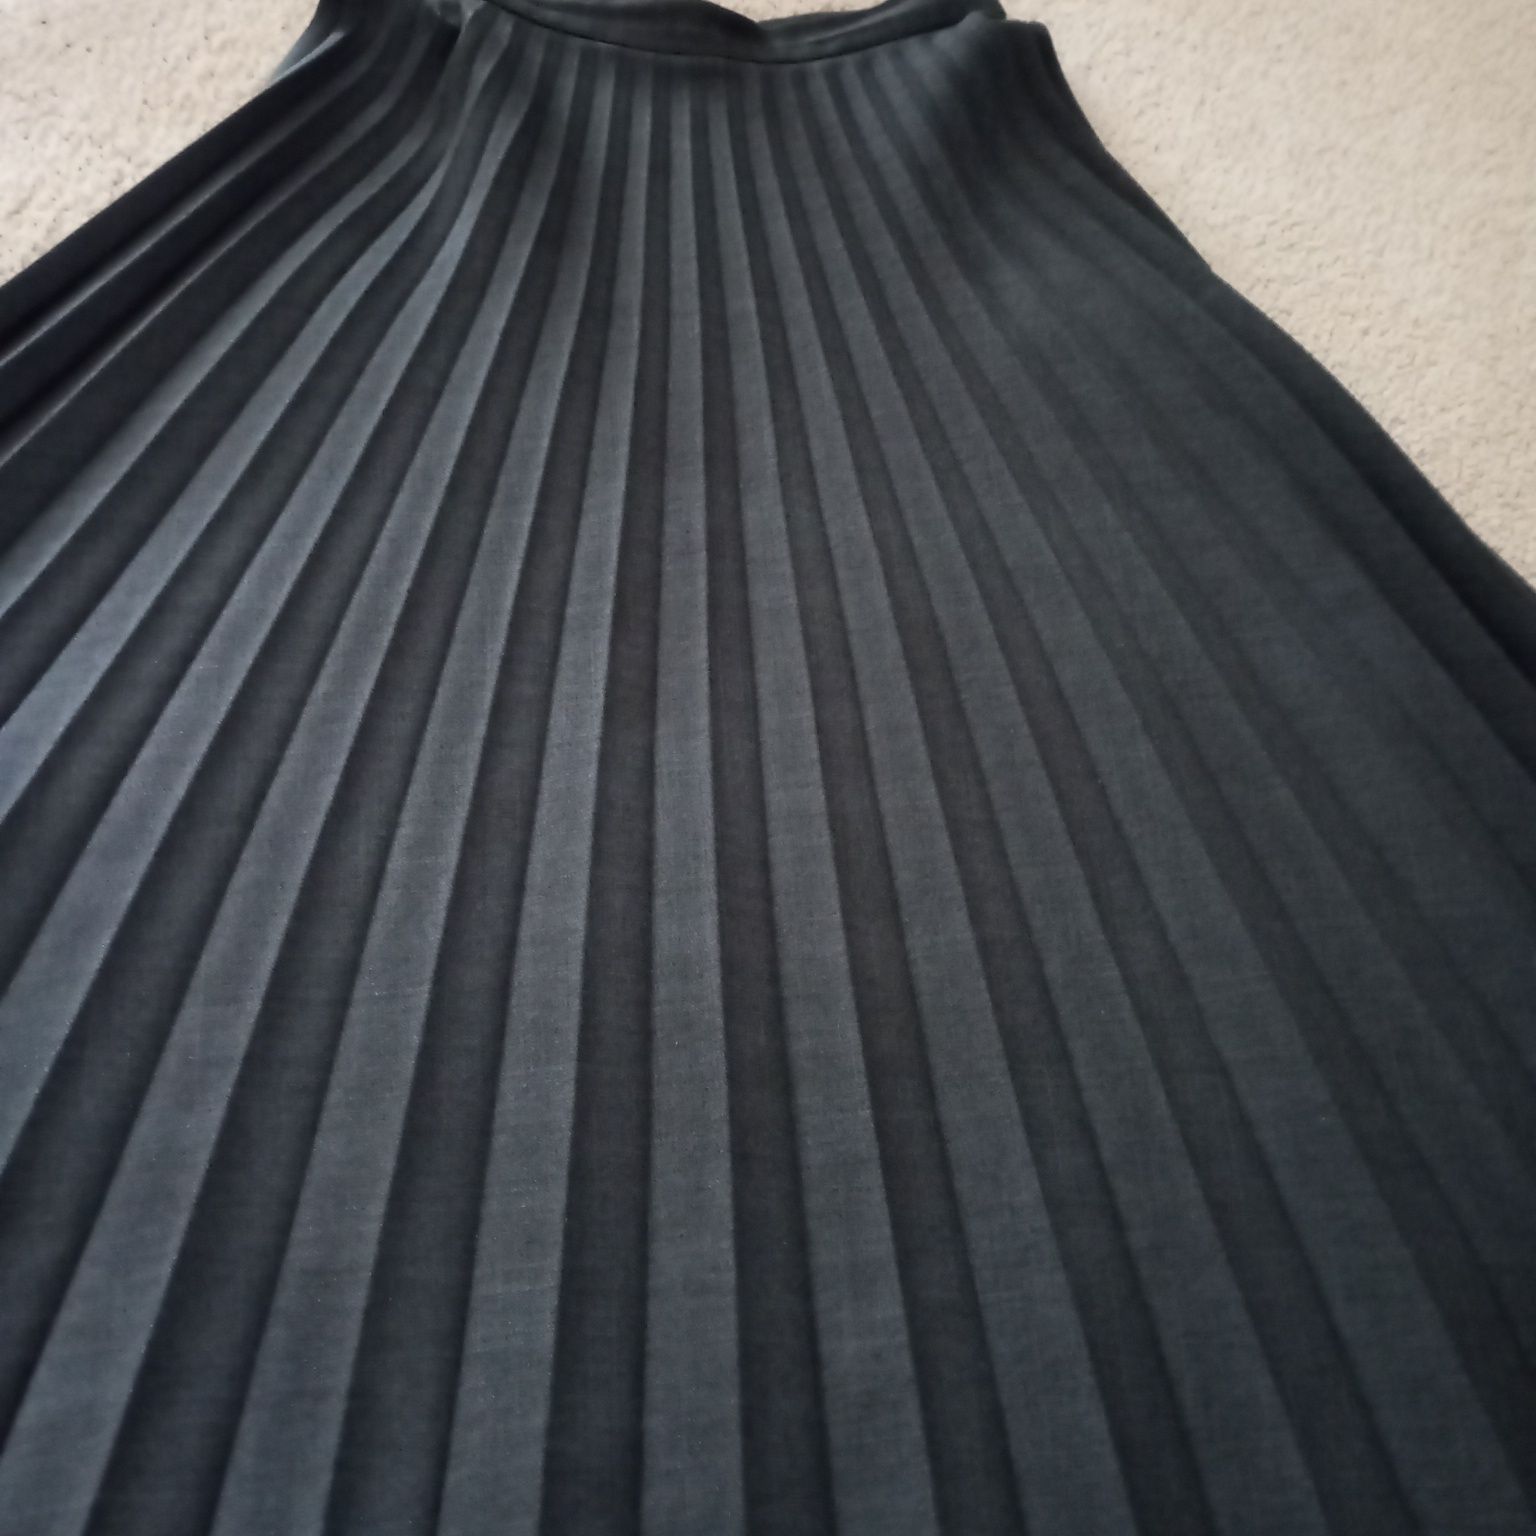 klasyczna bardzo długa solejka -plisowana spódnica